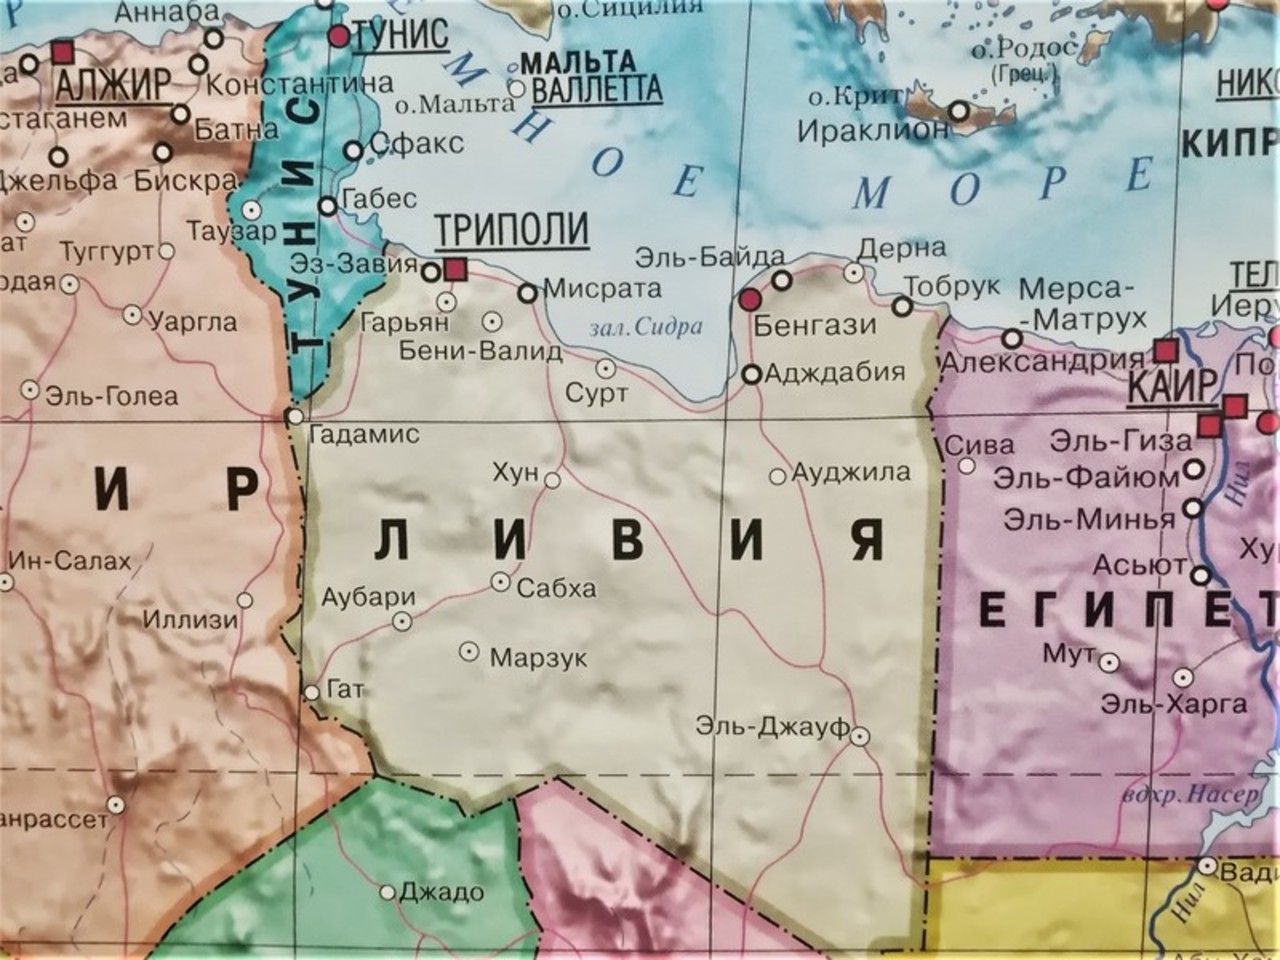 Страна ливия алжир. Карта Ливии на русском языке географическая. Ливия политическая карта. Триполи столица Ливии на карте.